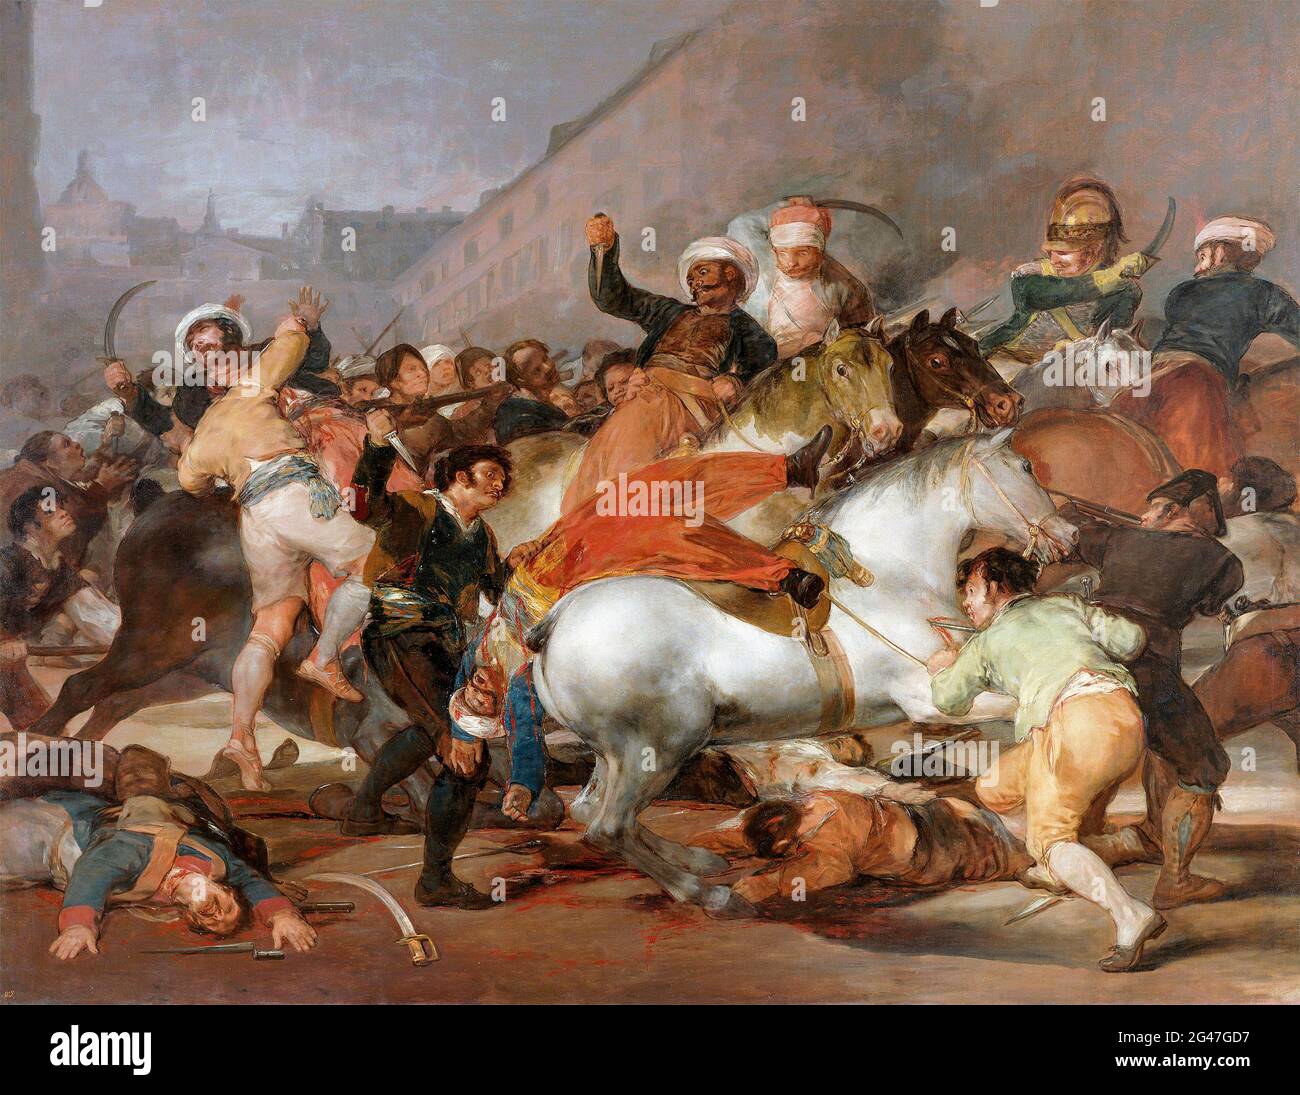 Goya. El segundo de mayo de 1808 o el cargo de los mamelucos de Francisco José de Goya y Lucientes (1746-1828), óleo sobre lienzo, 1814 Foto de stock